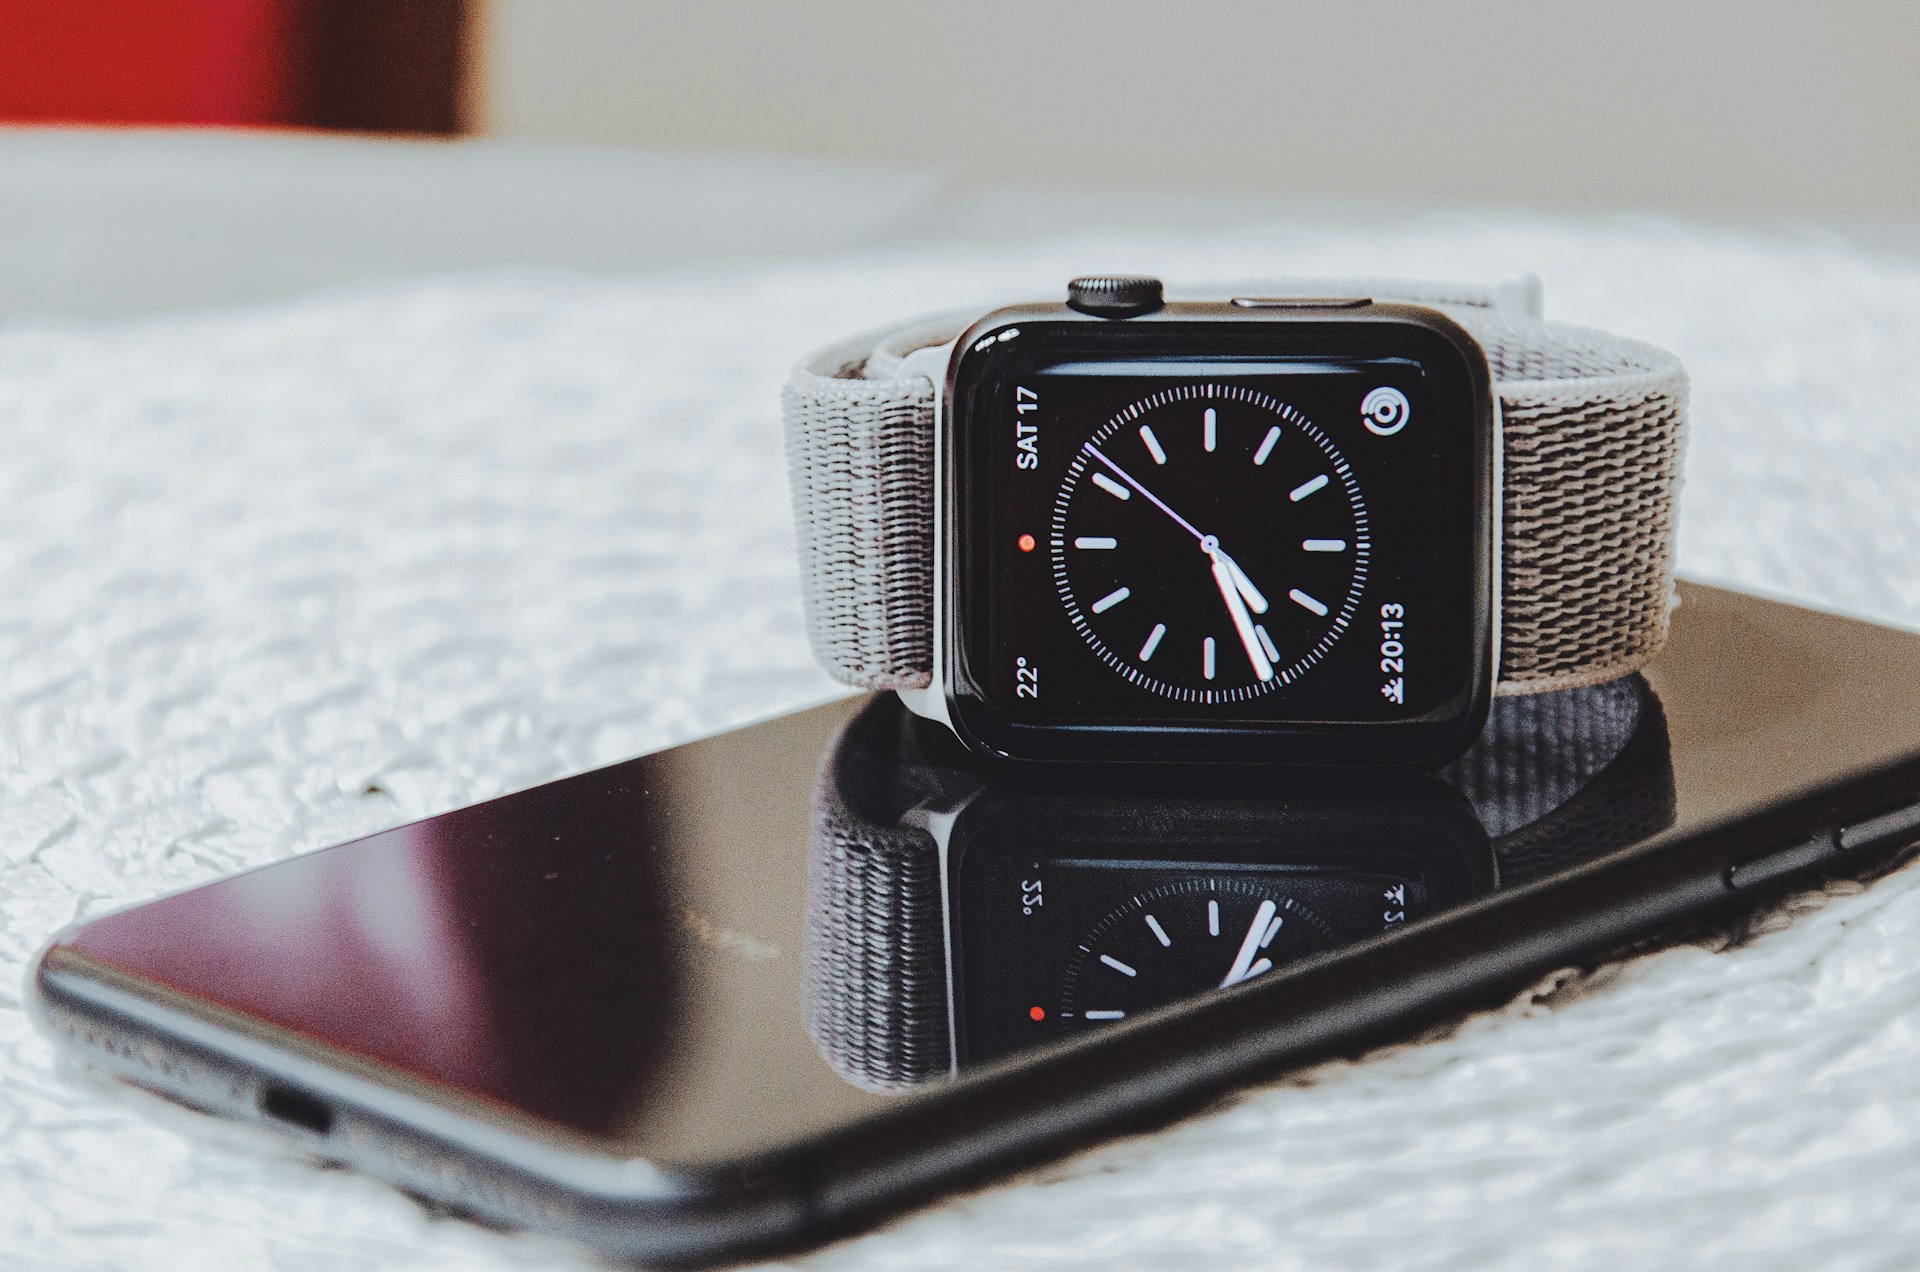 Siga nosso guia passo a passo para desemparelhar seu Apple Watch com segurança e proteger suas informações pessoais.